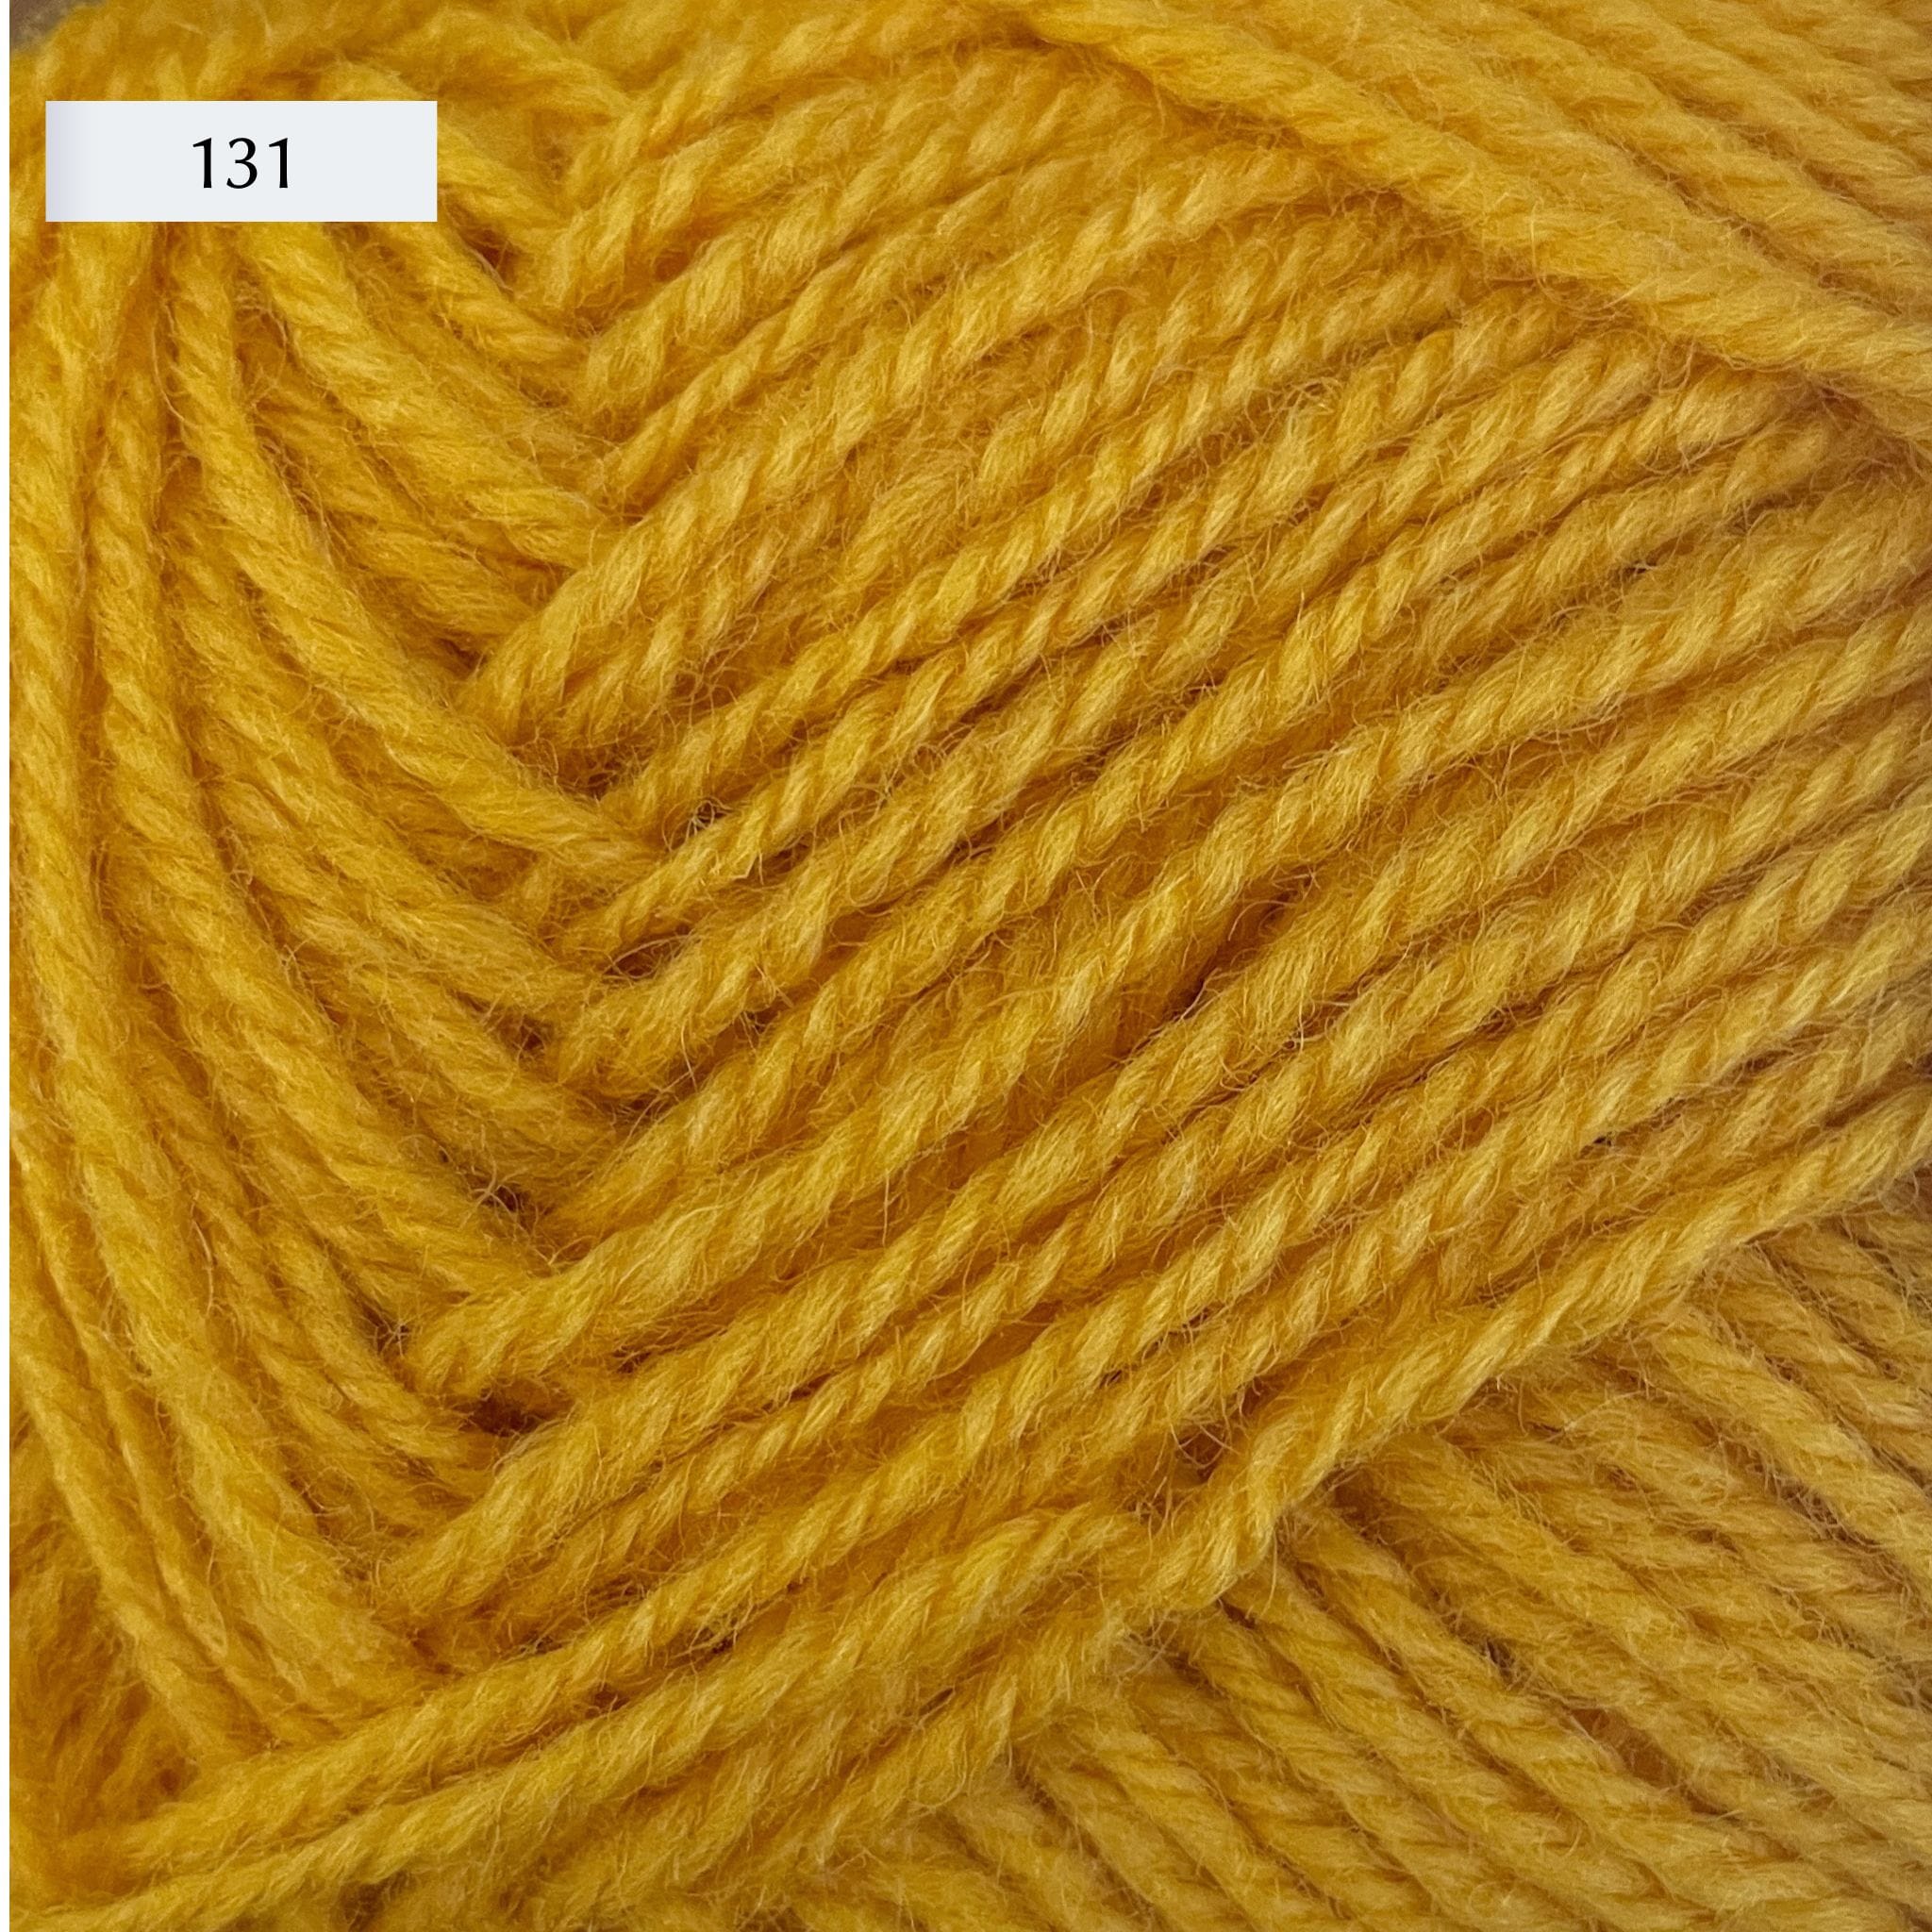 Rauma Strikkegarn, DK weight yarn, in color 131, golden yellow